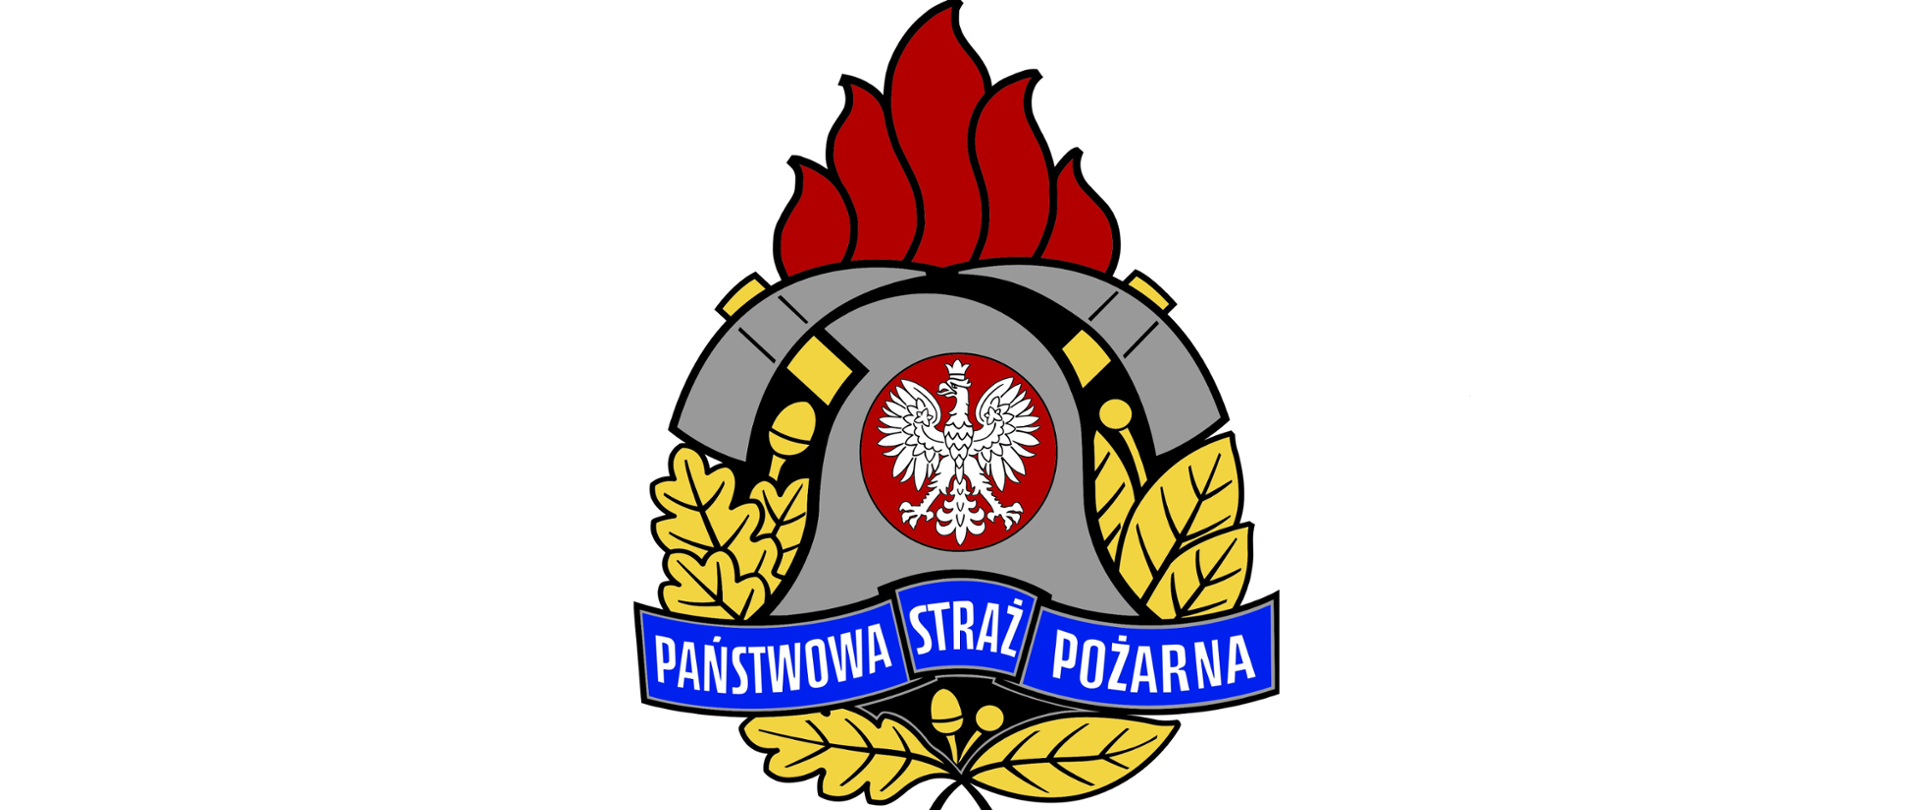 Logo Państwowej Straży Pożarnej w kształcie ognika, zawierające dwa toporki strażackie i hełm w centralnej części. Napis Państwowa Straż Pożarna na niebieskiej wstędze w dolnej części.